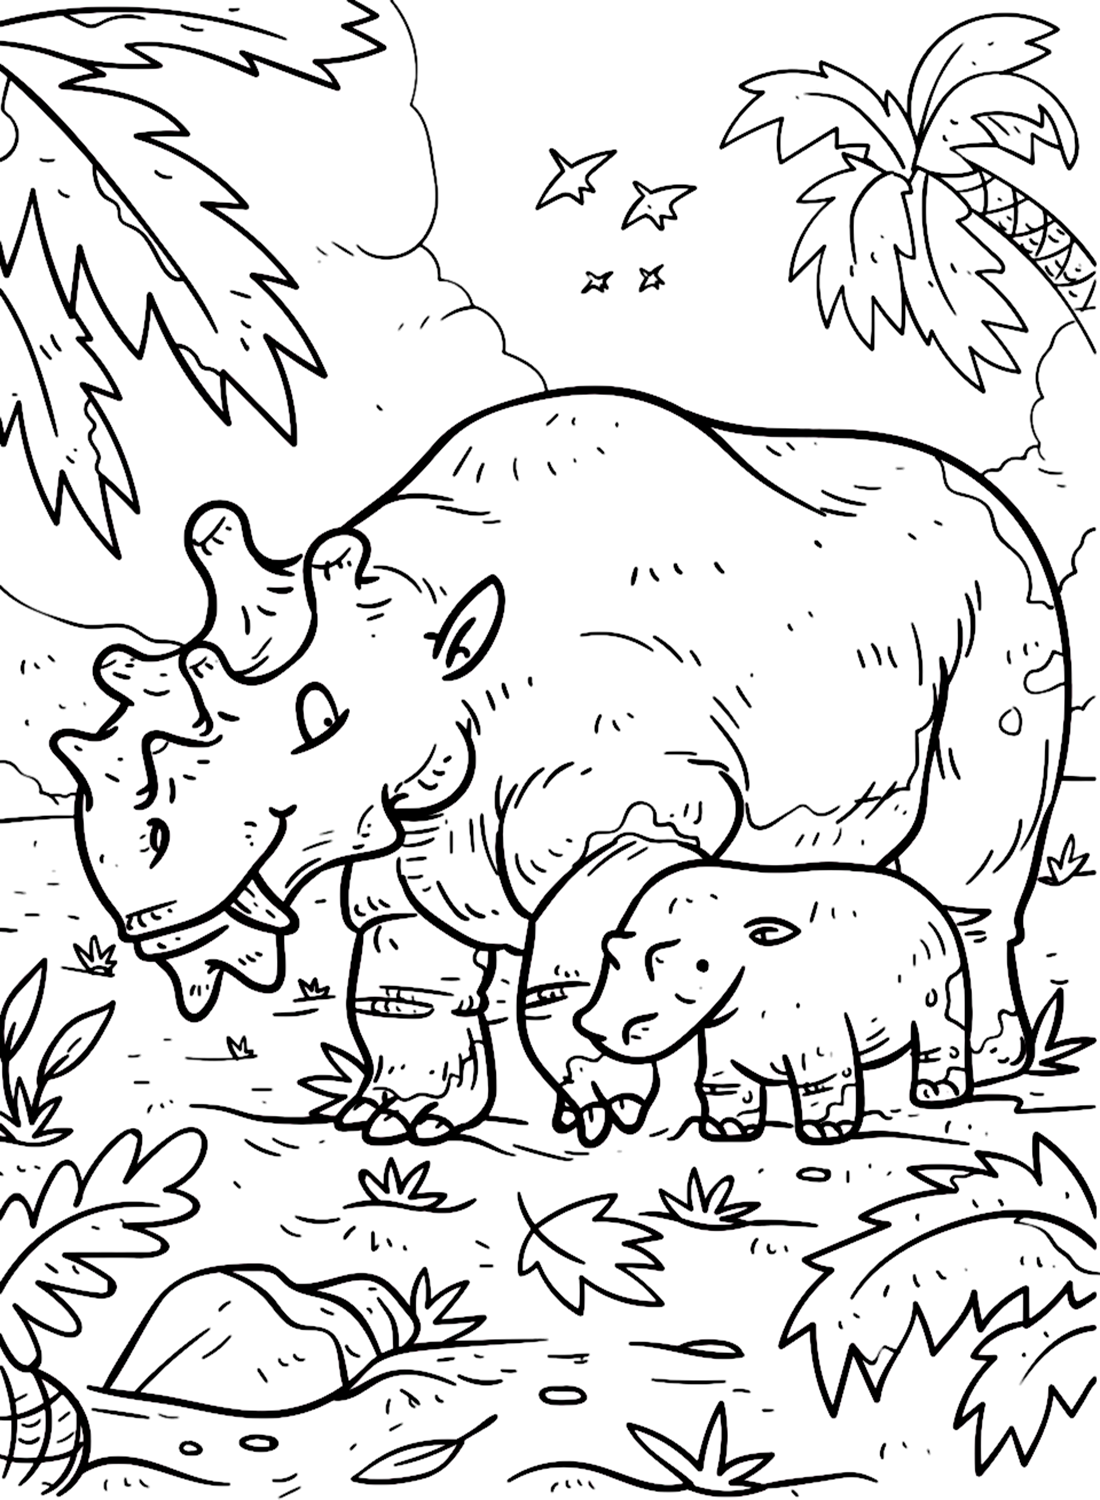 وحيد القرن عصور ما قبل التاريخ من وحيد القرن